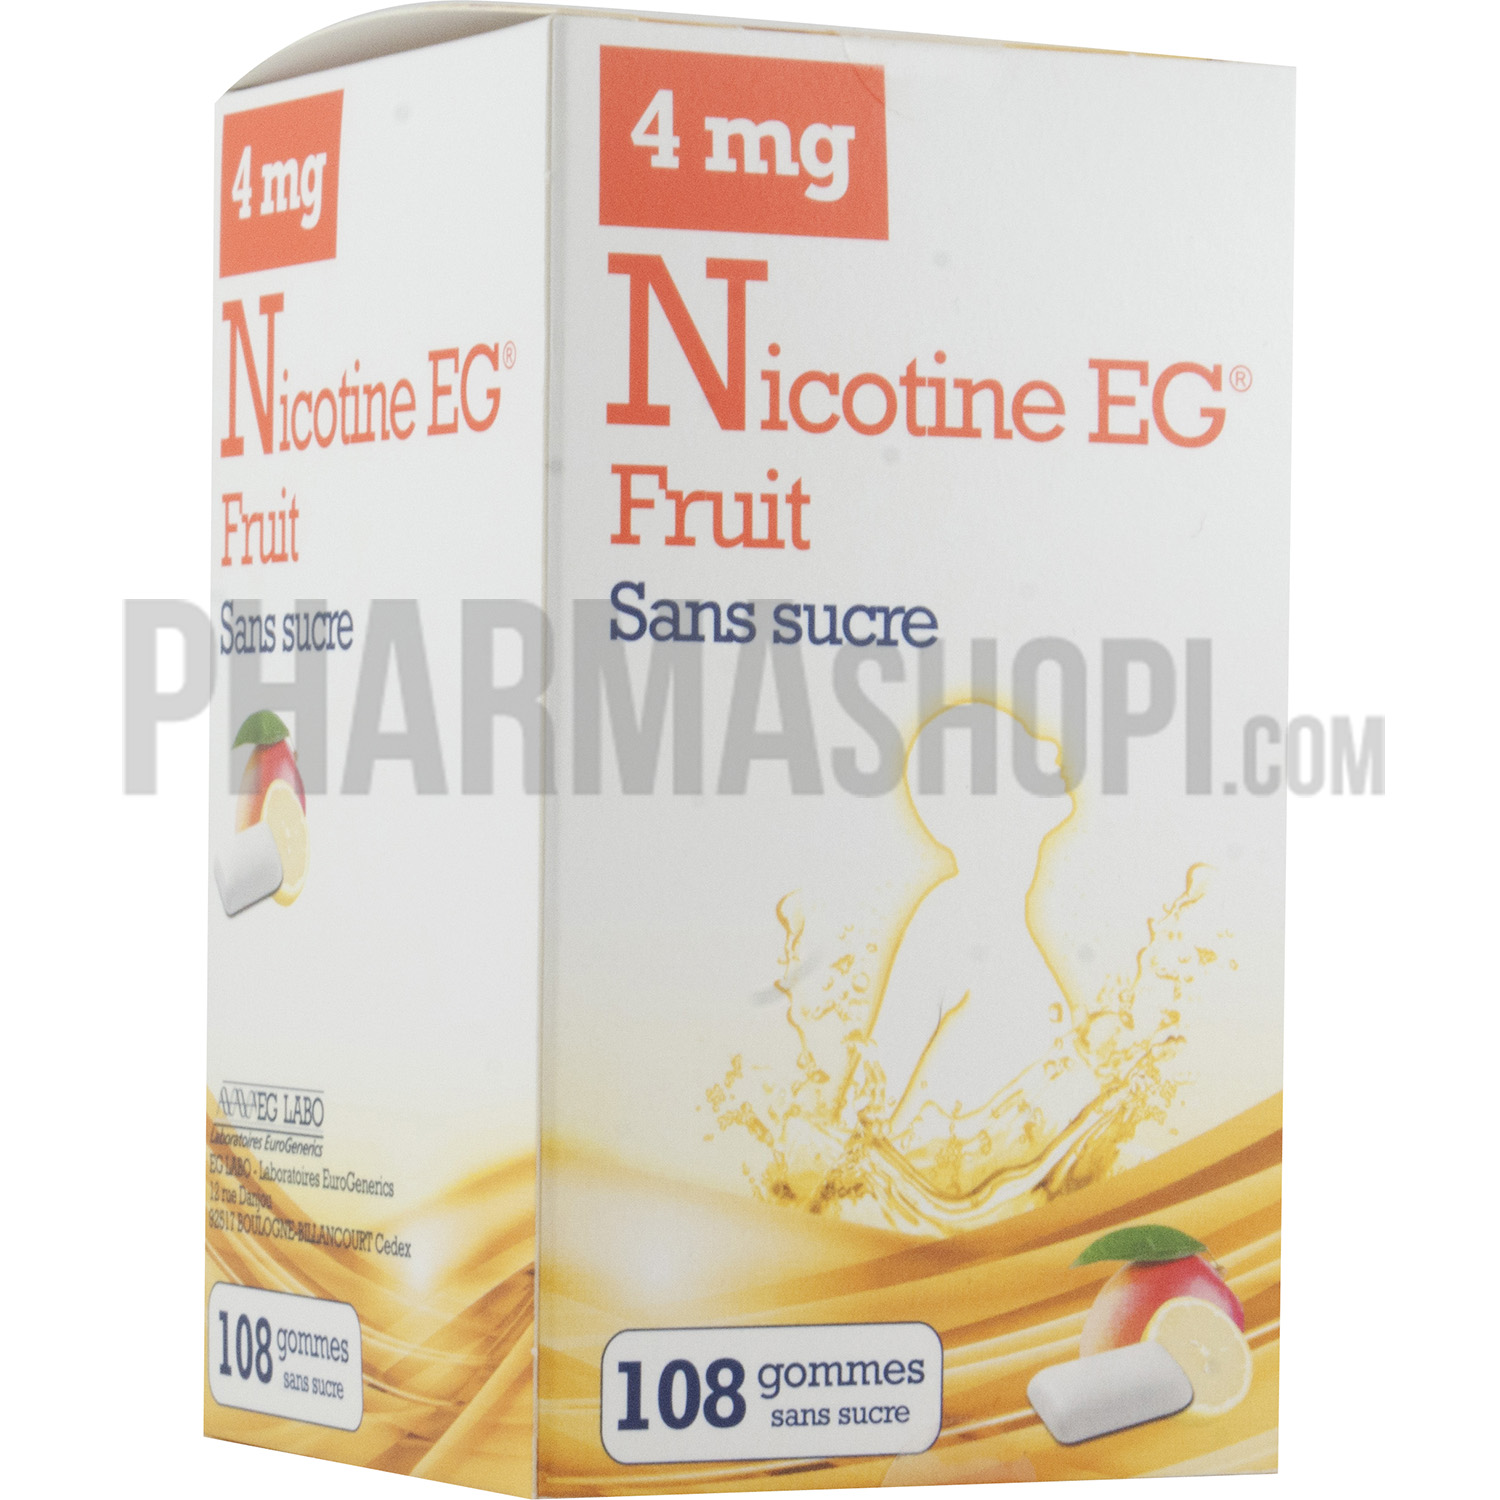 Nicotine EG 4mg Fruit sans sucre - boite de 108 gommes